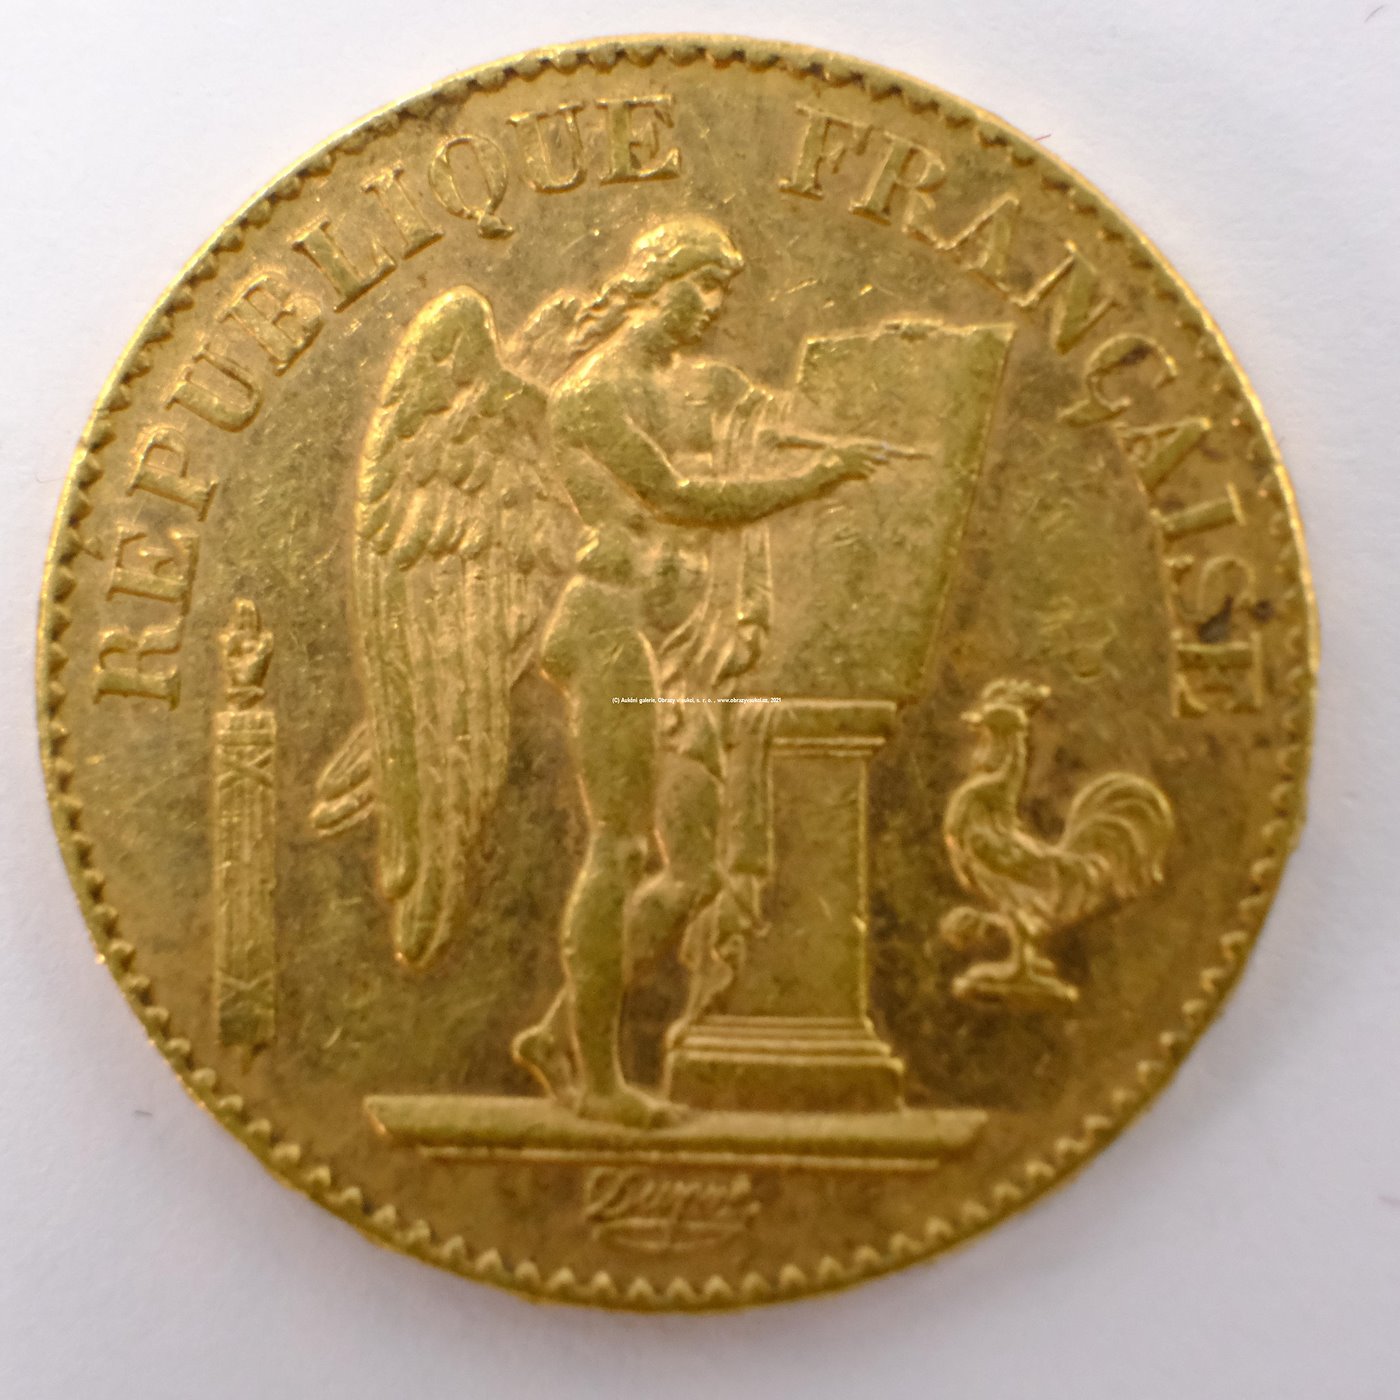 .. - Francie zlatý 20 frank Anděl štěstí 1896. Zlato 900/1000, hrubá hmotnost 6,44g